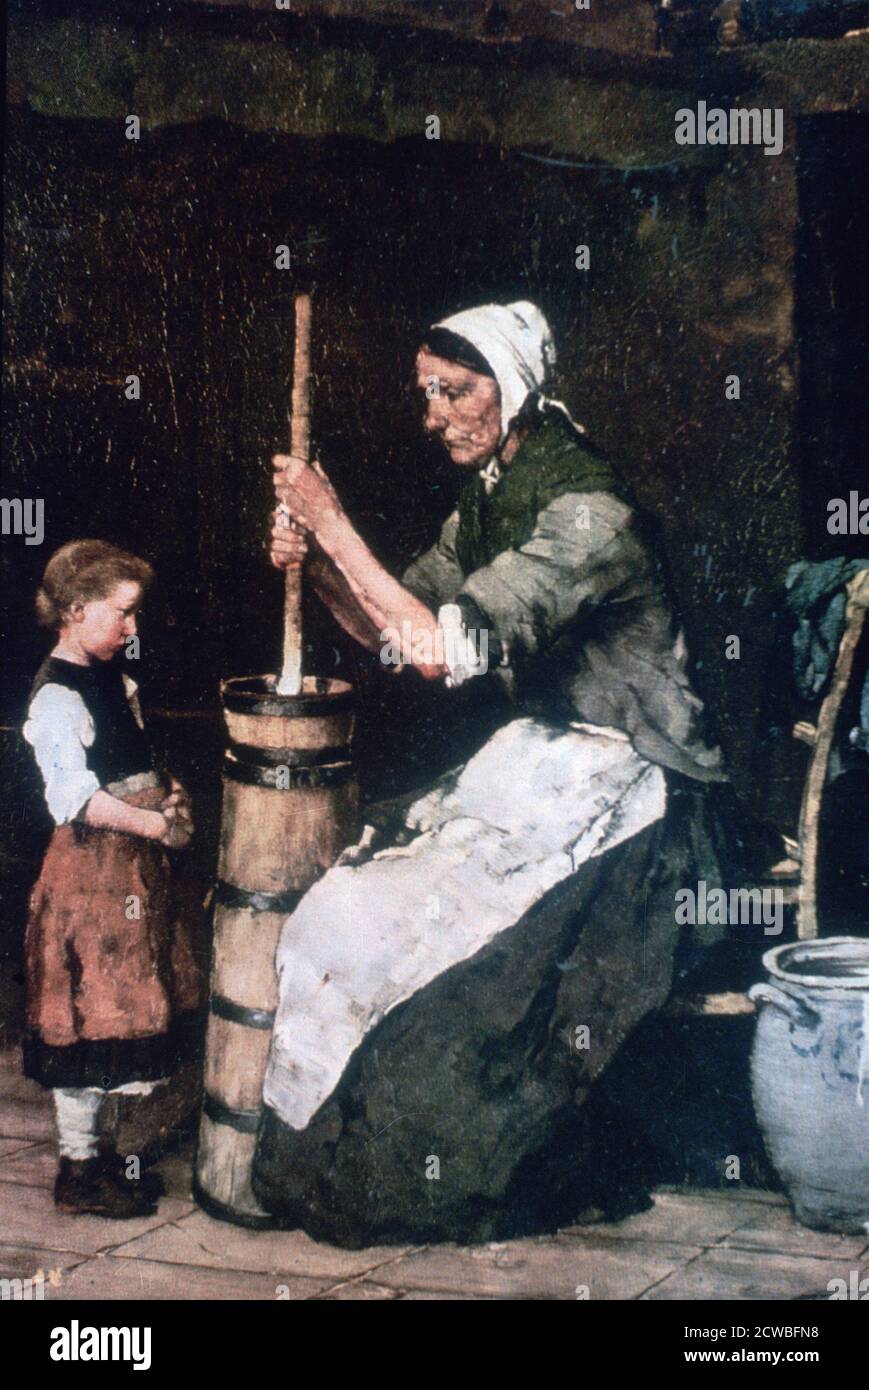 Frau bei der Abwanderung', c1864-1900. Künstler: Mihaly Munkacsy. Mihaly Munkacsy (1844-1900) war ein ungarischer Maler. Mit seinen Genrebildern und großformatigen biblischen Gemälden erlangte er internationale Reputation. Stockfoto